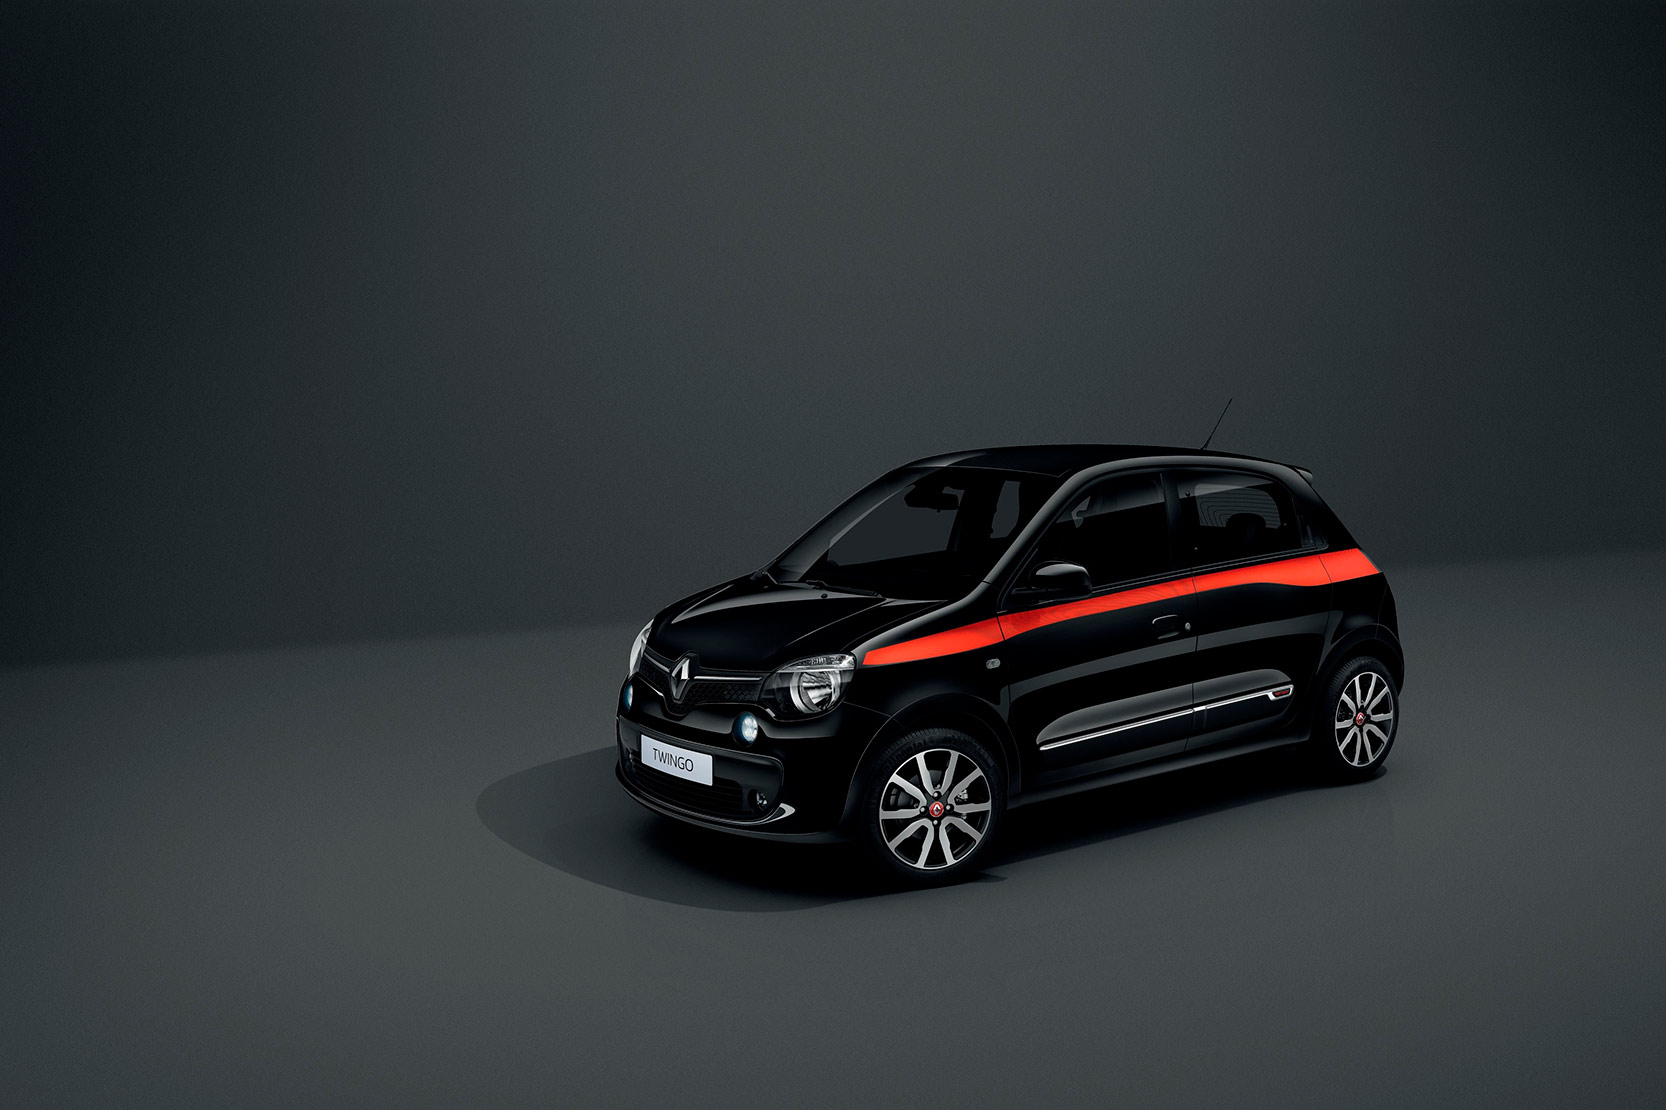 Image principale de l'actu: Renault twingo red light edition tarifs et equipements 